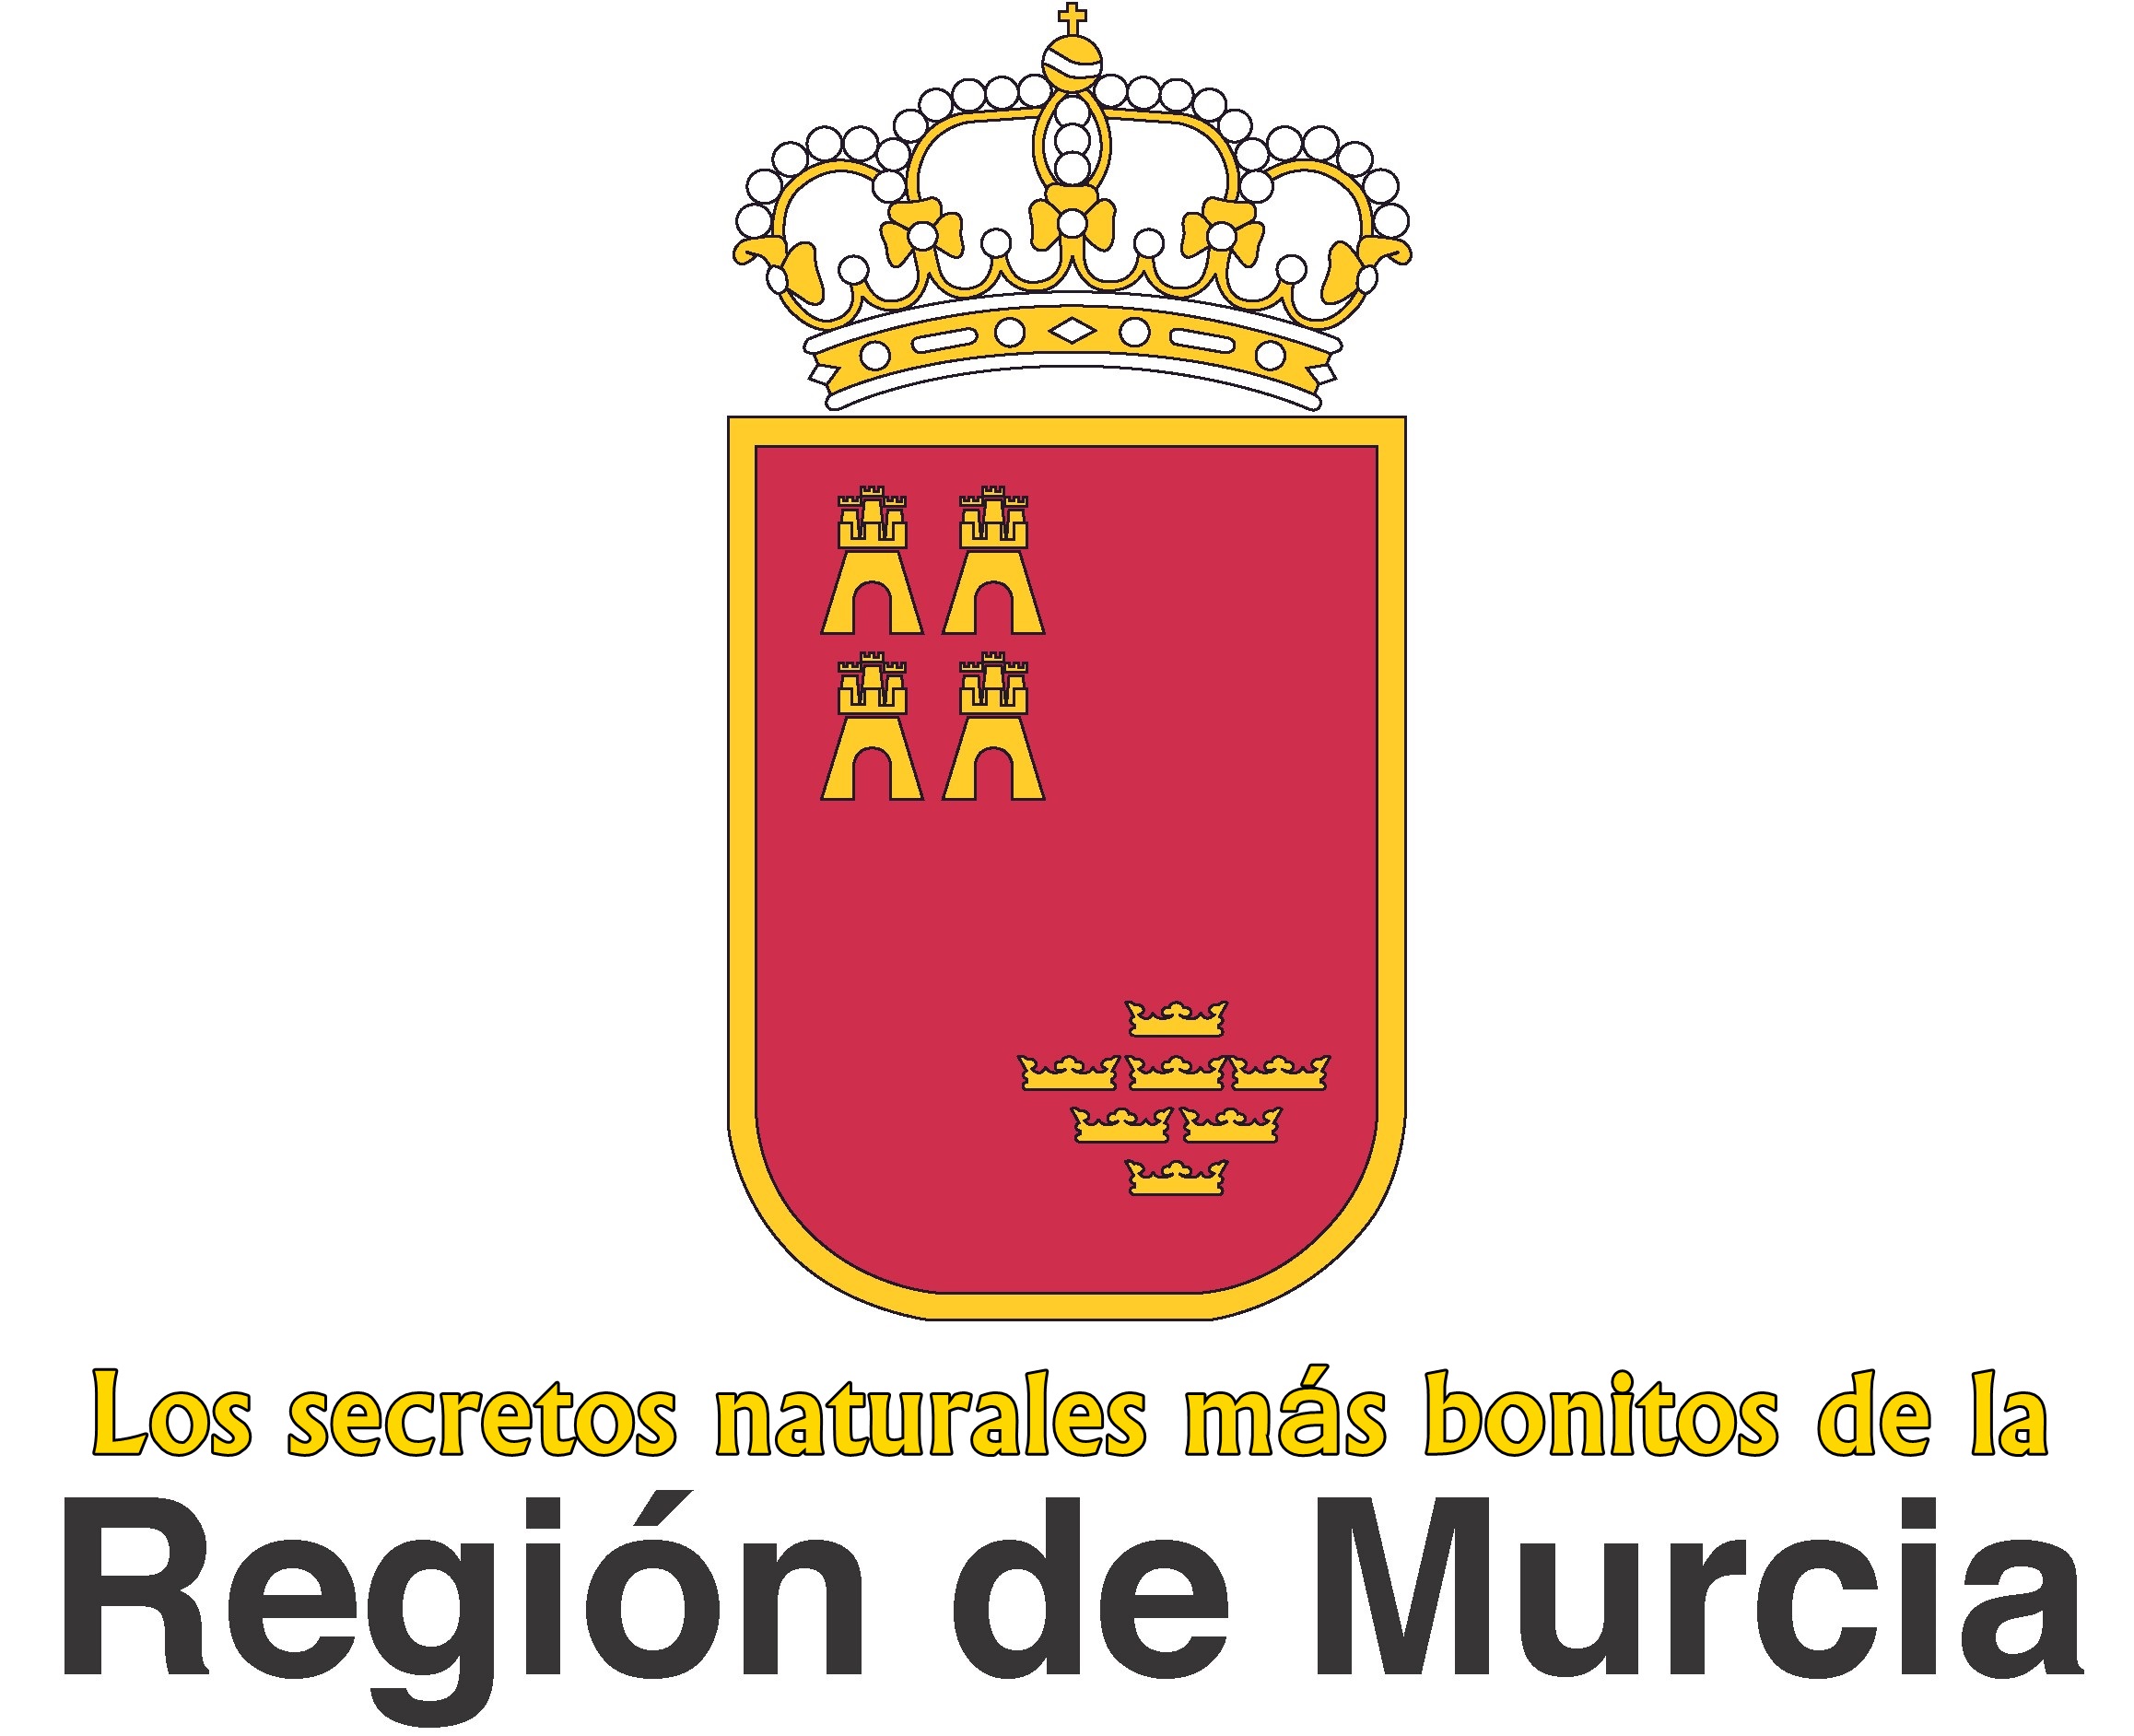 Los secretos naturales más bonitos de la Región de Murcia